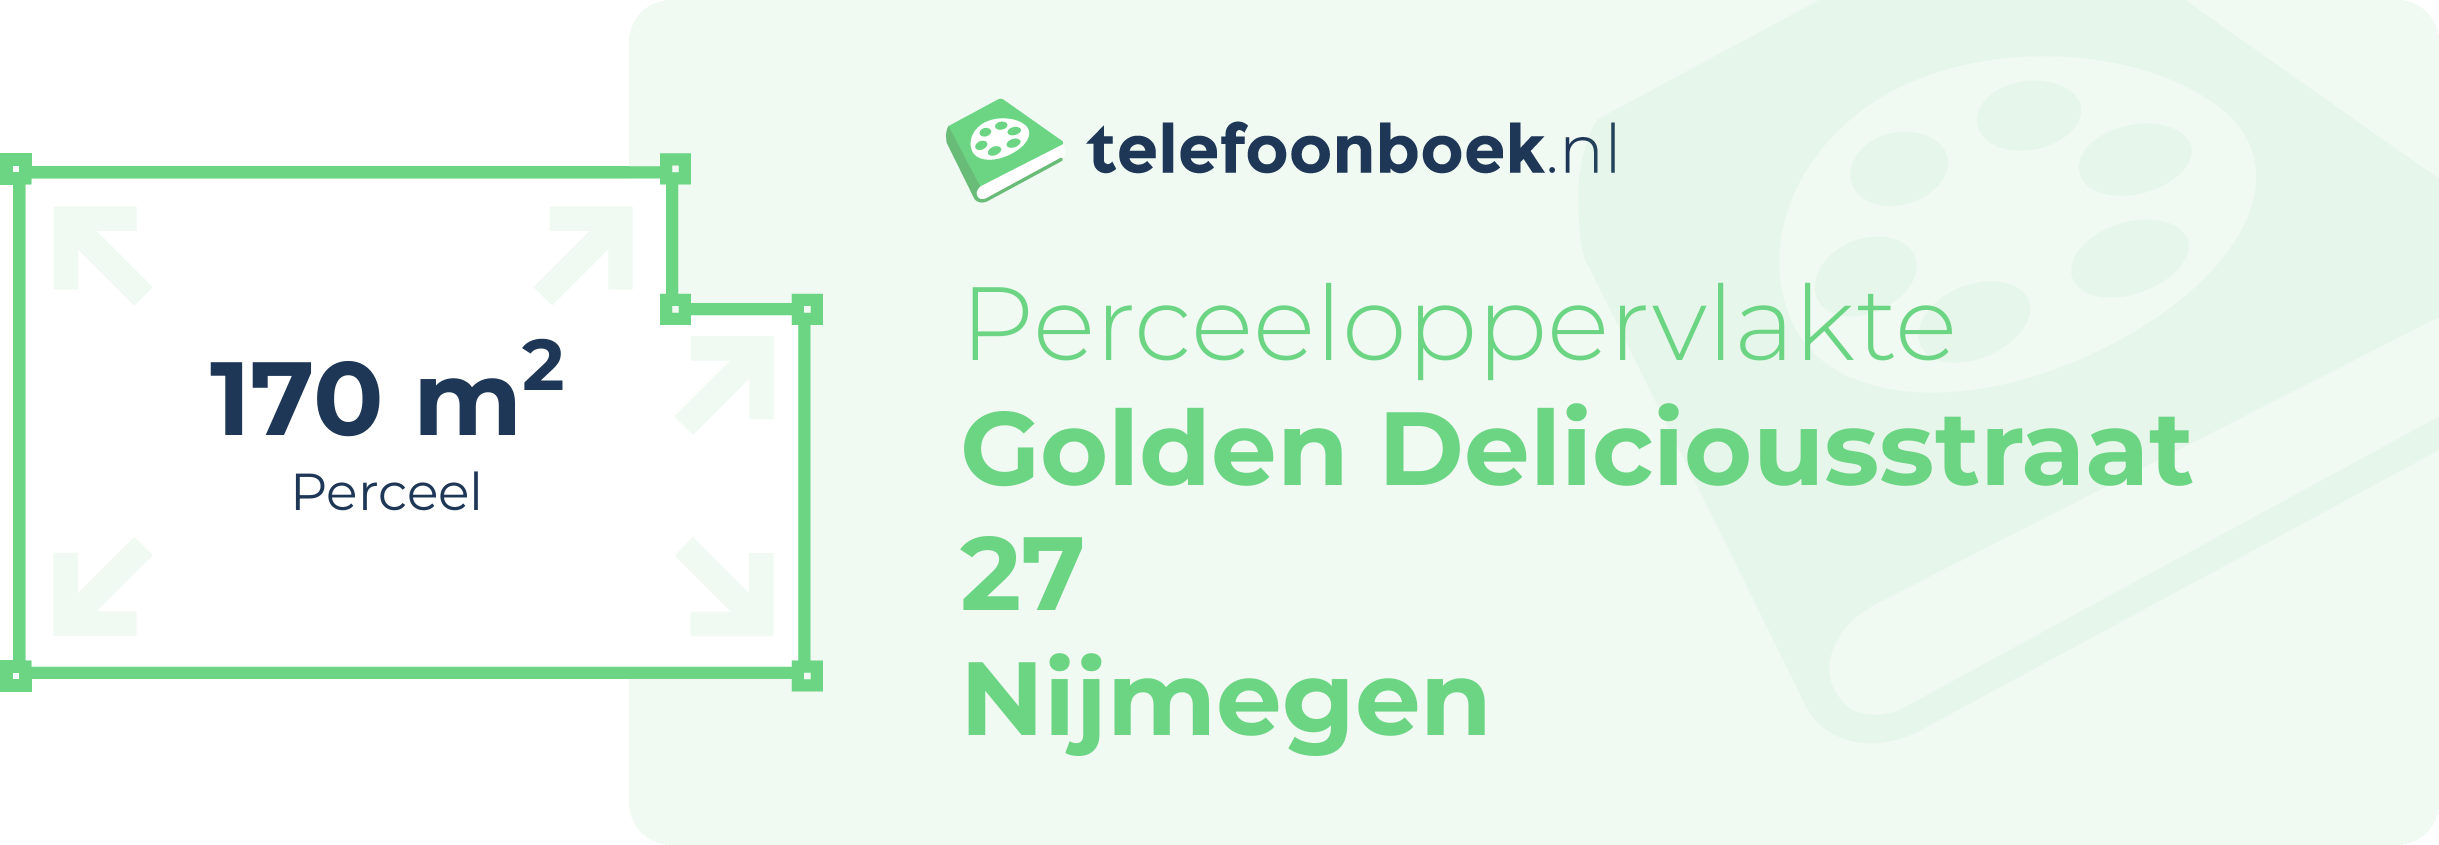 Perceeloppervlakte Golden Deliciousstraat 27 Nijmegen